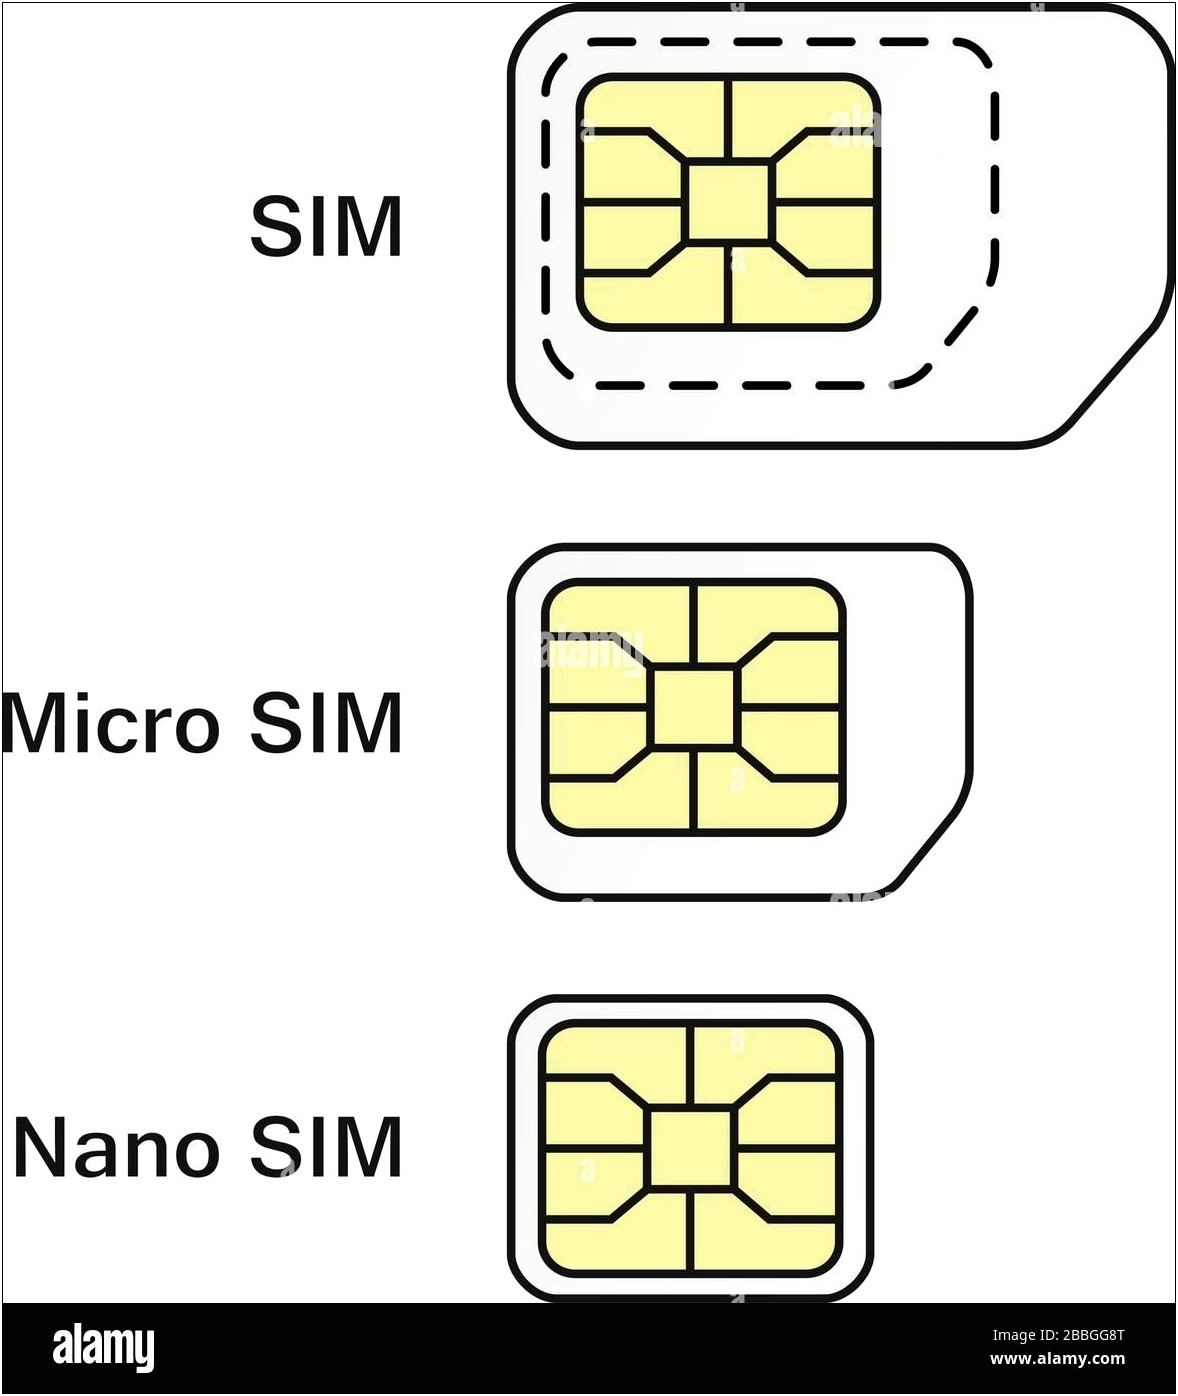 Micro Sim To Nano Sim Template Letter Size